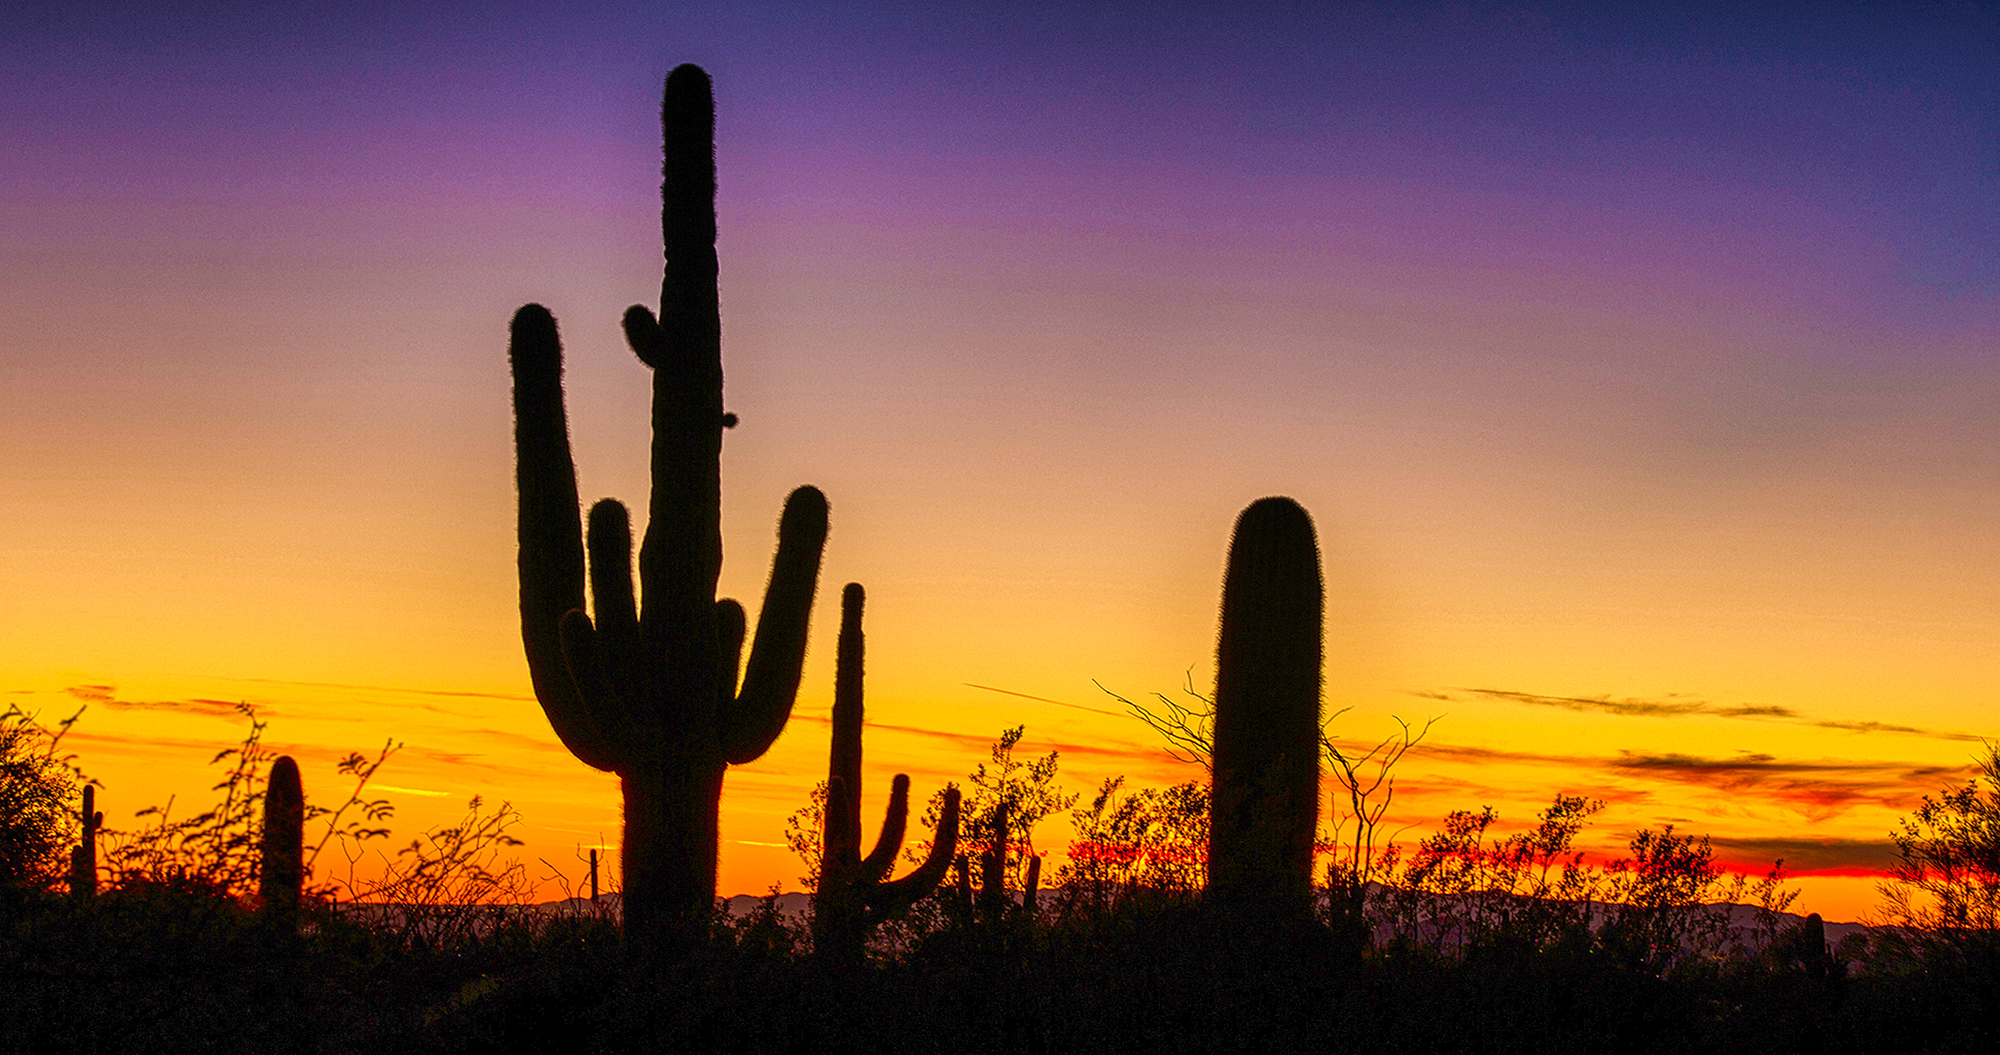 Saguaro Silhouette by Skip Weeks